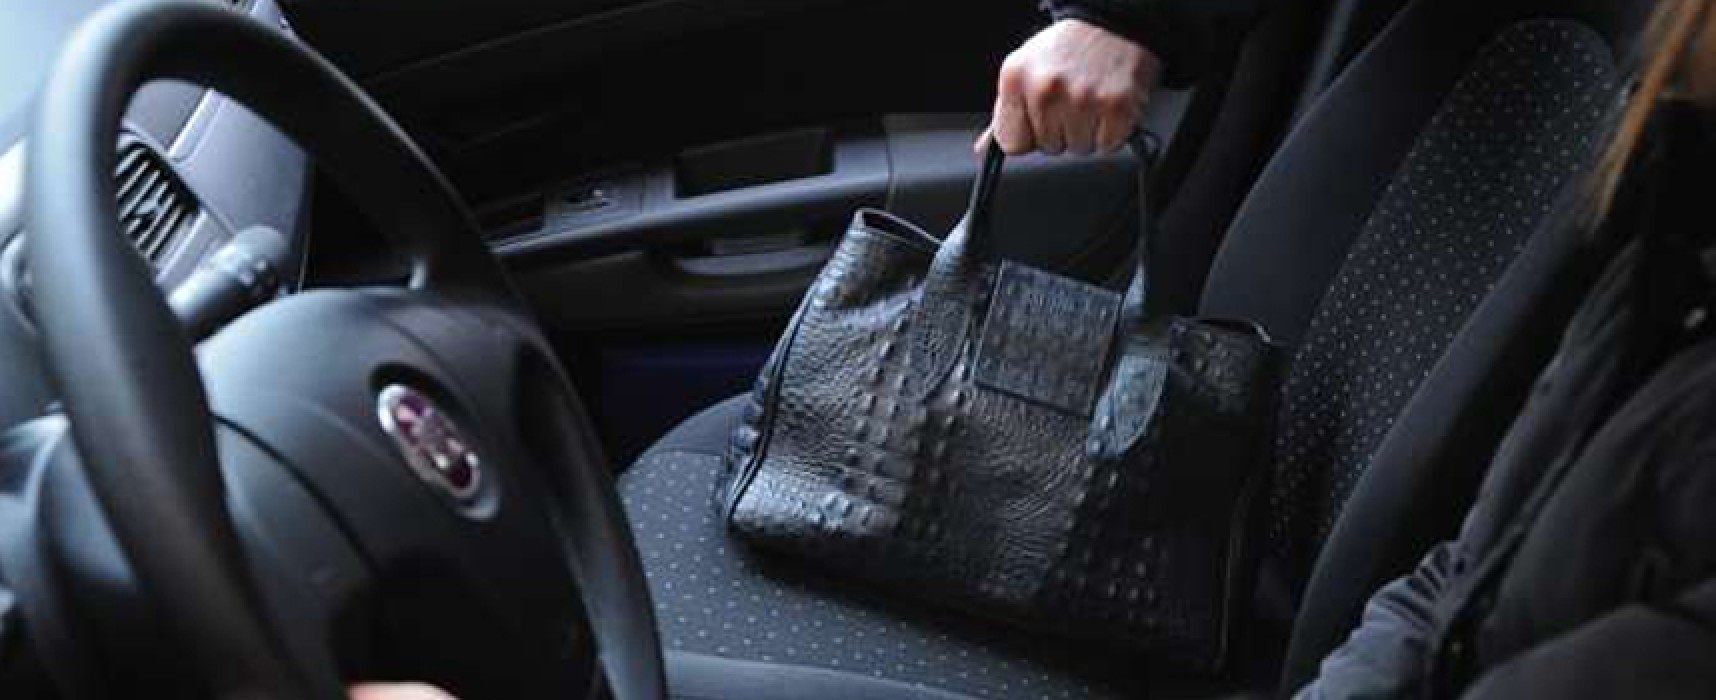 Ancora furto di una borsa da un’auto ferma: vittima una donna